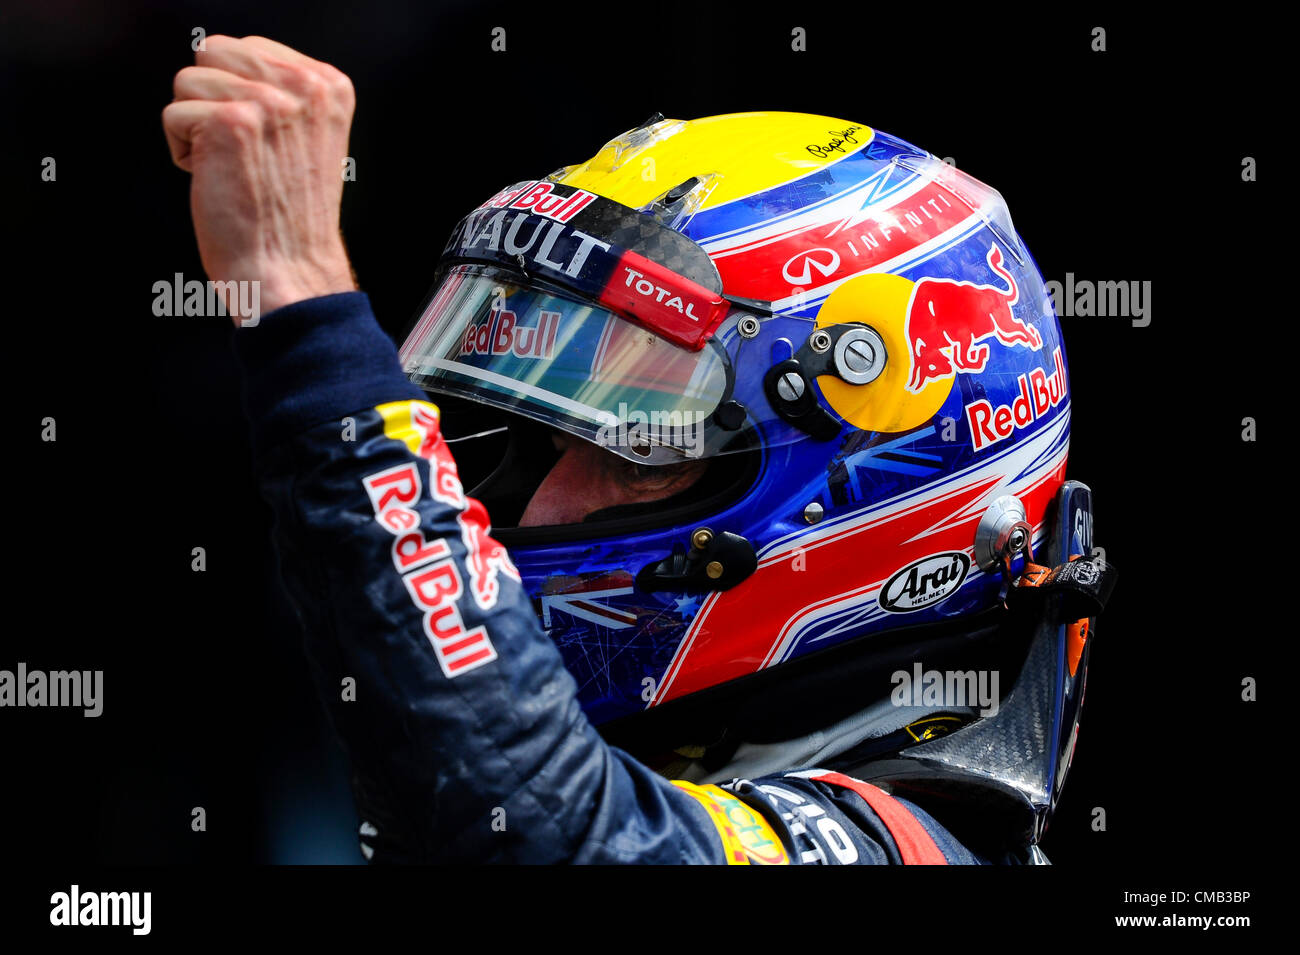 Towcester, England, 8. Juli 2012. Mark Webber aus Australien und Red Bull Racing feiert Sieg während des Rennens beim britischen Grand Prix Santander, Runde 9 der 2012 FIA Formel 1 Weltmeisterschaft in Silverstone. Stockfoto